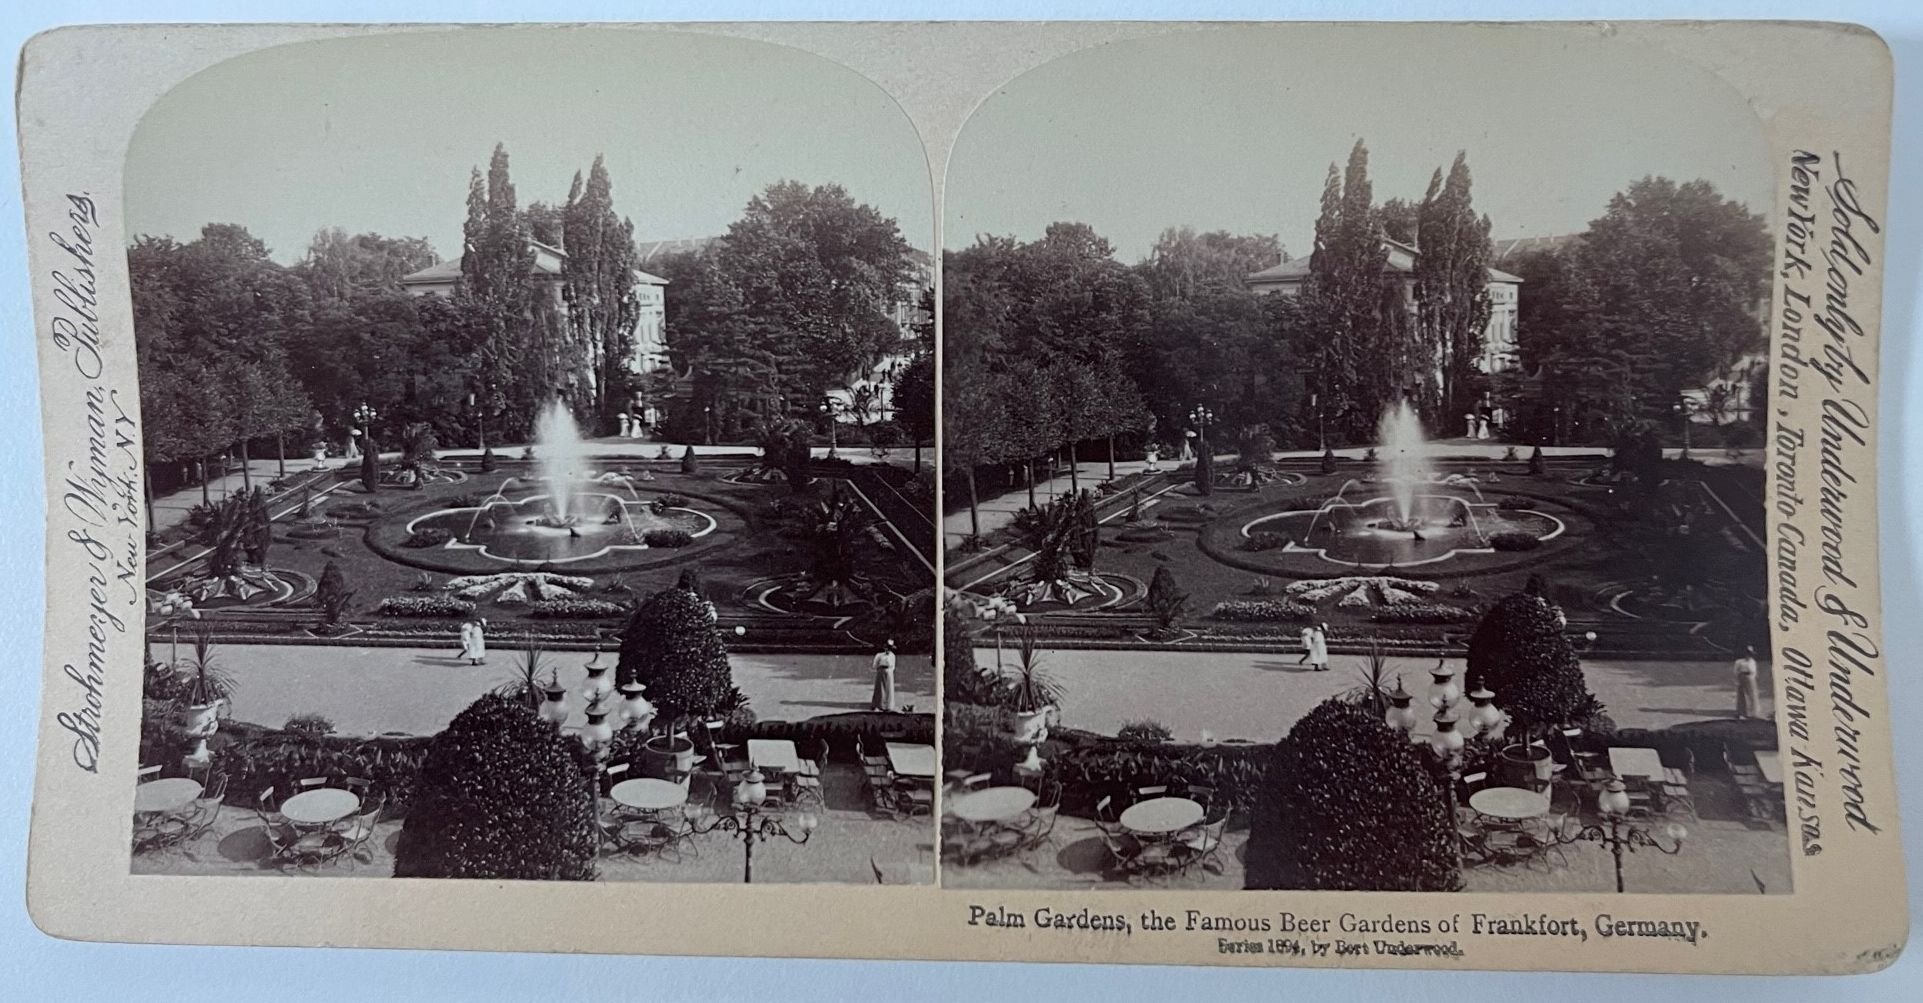 Underwood & Underwood, Palm Gardens, the Famous Beer Gardens of Frankfort, Germany, 1894 (Taunus-Rhein-Main - Regionalgeschichtliche Sammlung Dr. Stefan Naas CC BY-NC-SA)